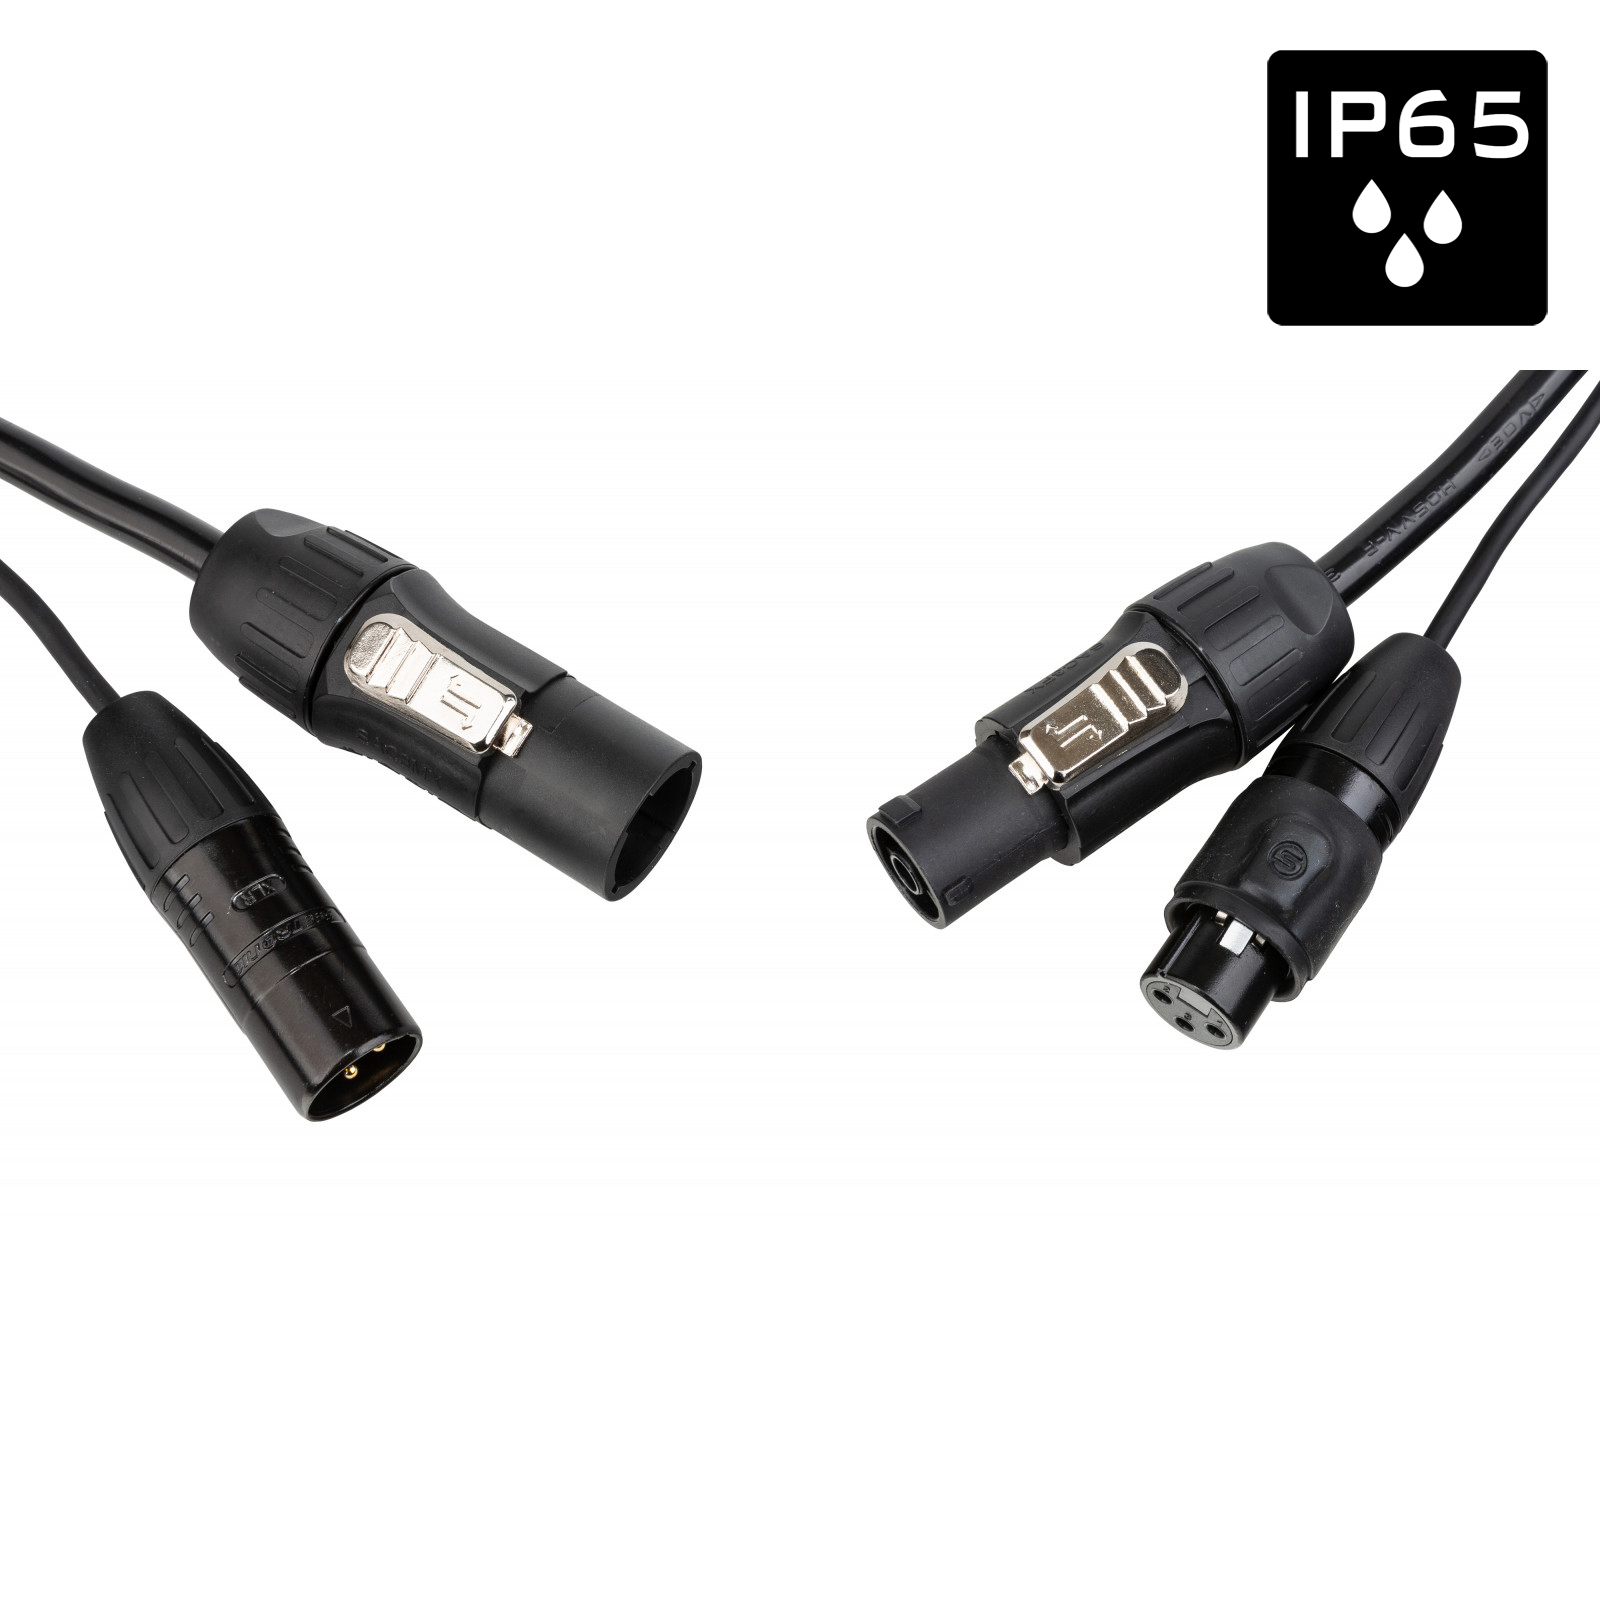 Câble IP65 avec connecteurs Seetronic XLR 3p et compatibles True1 - Longueur 5m